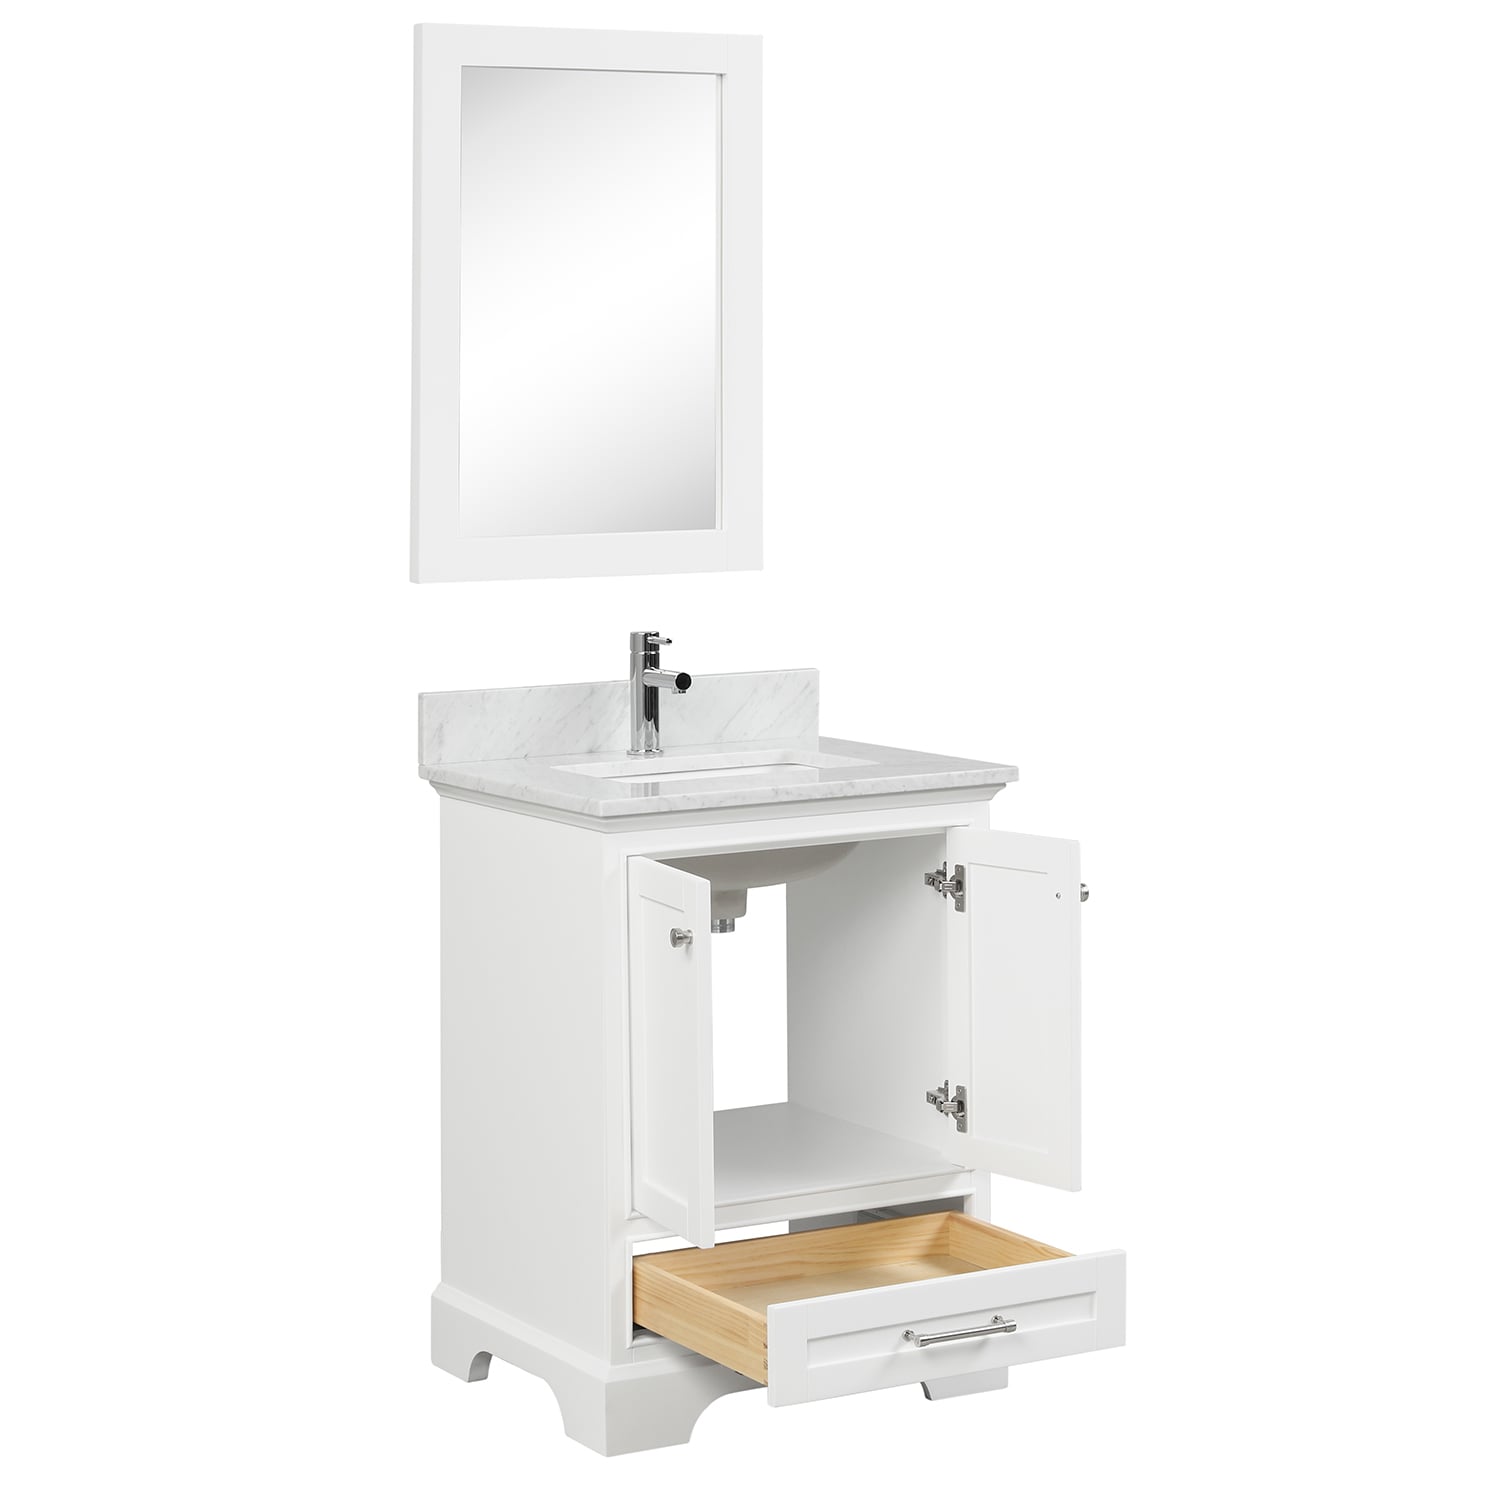 Copenhagen 24″ Bathroom Vanity with Marble Top - Contemporary Bathroom Vanity